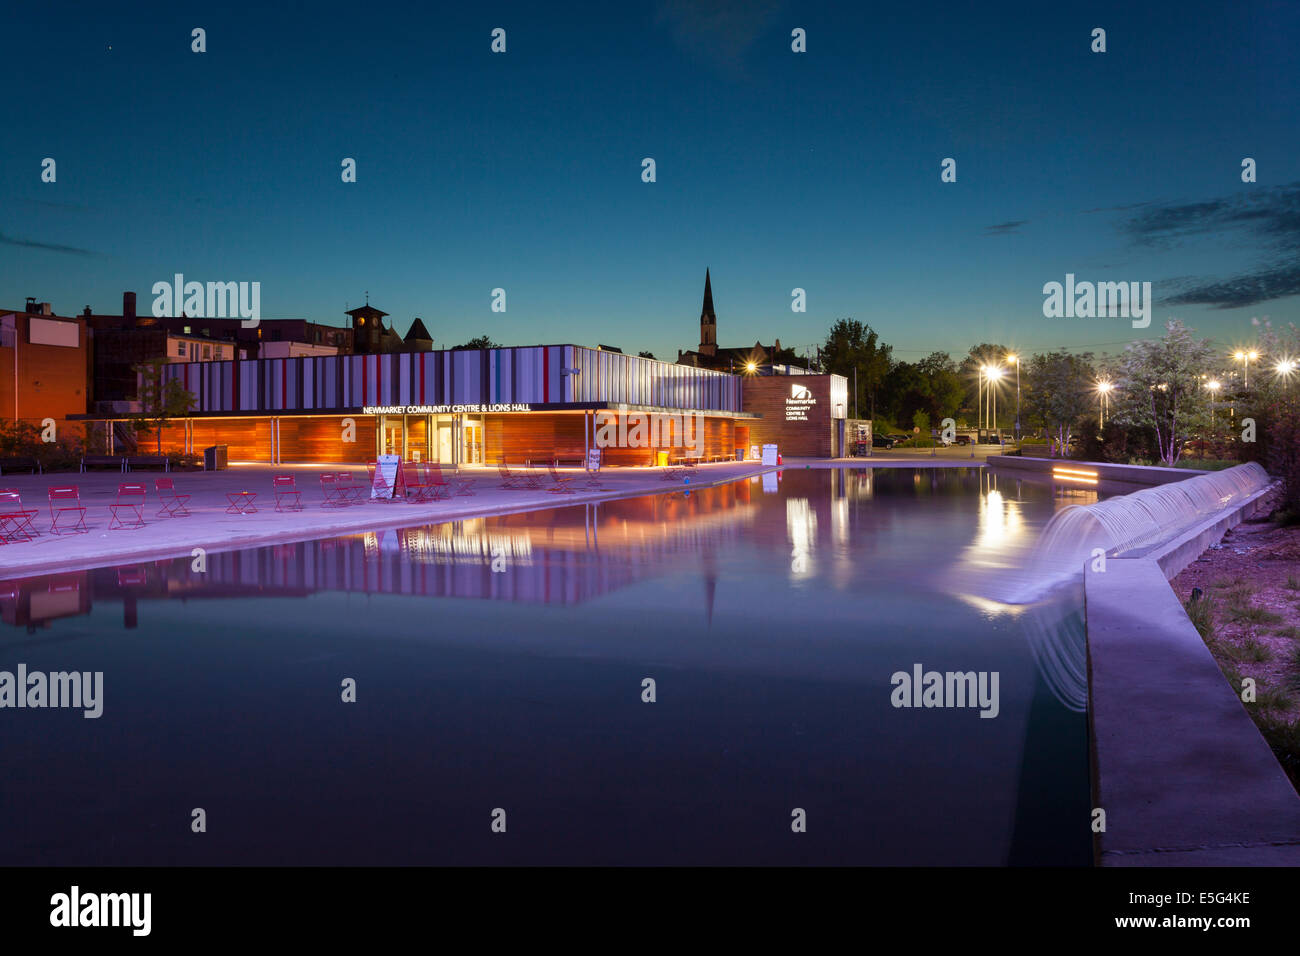 Le Centre communautaire de Newmarket baigné de lumière bleue au crépuscule dans le centre-ville de Newmarket, Ontario, Canada. Conçu par Superkul archit Banque D'Images